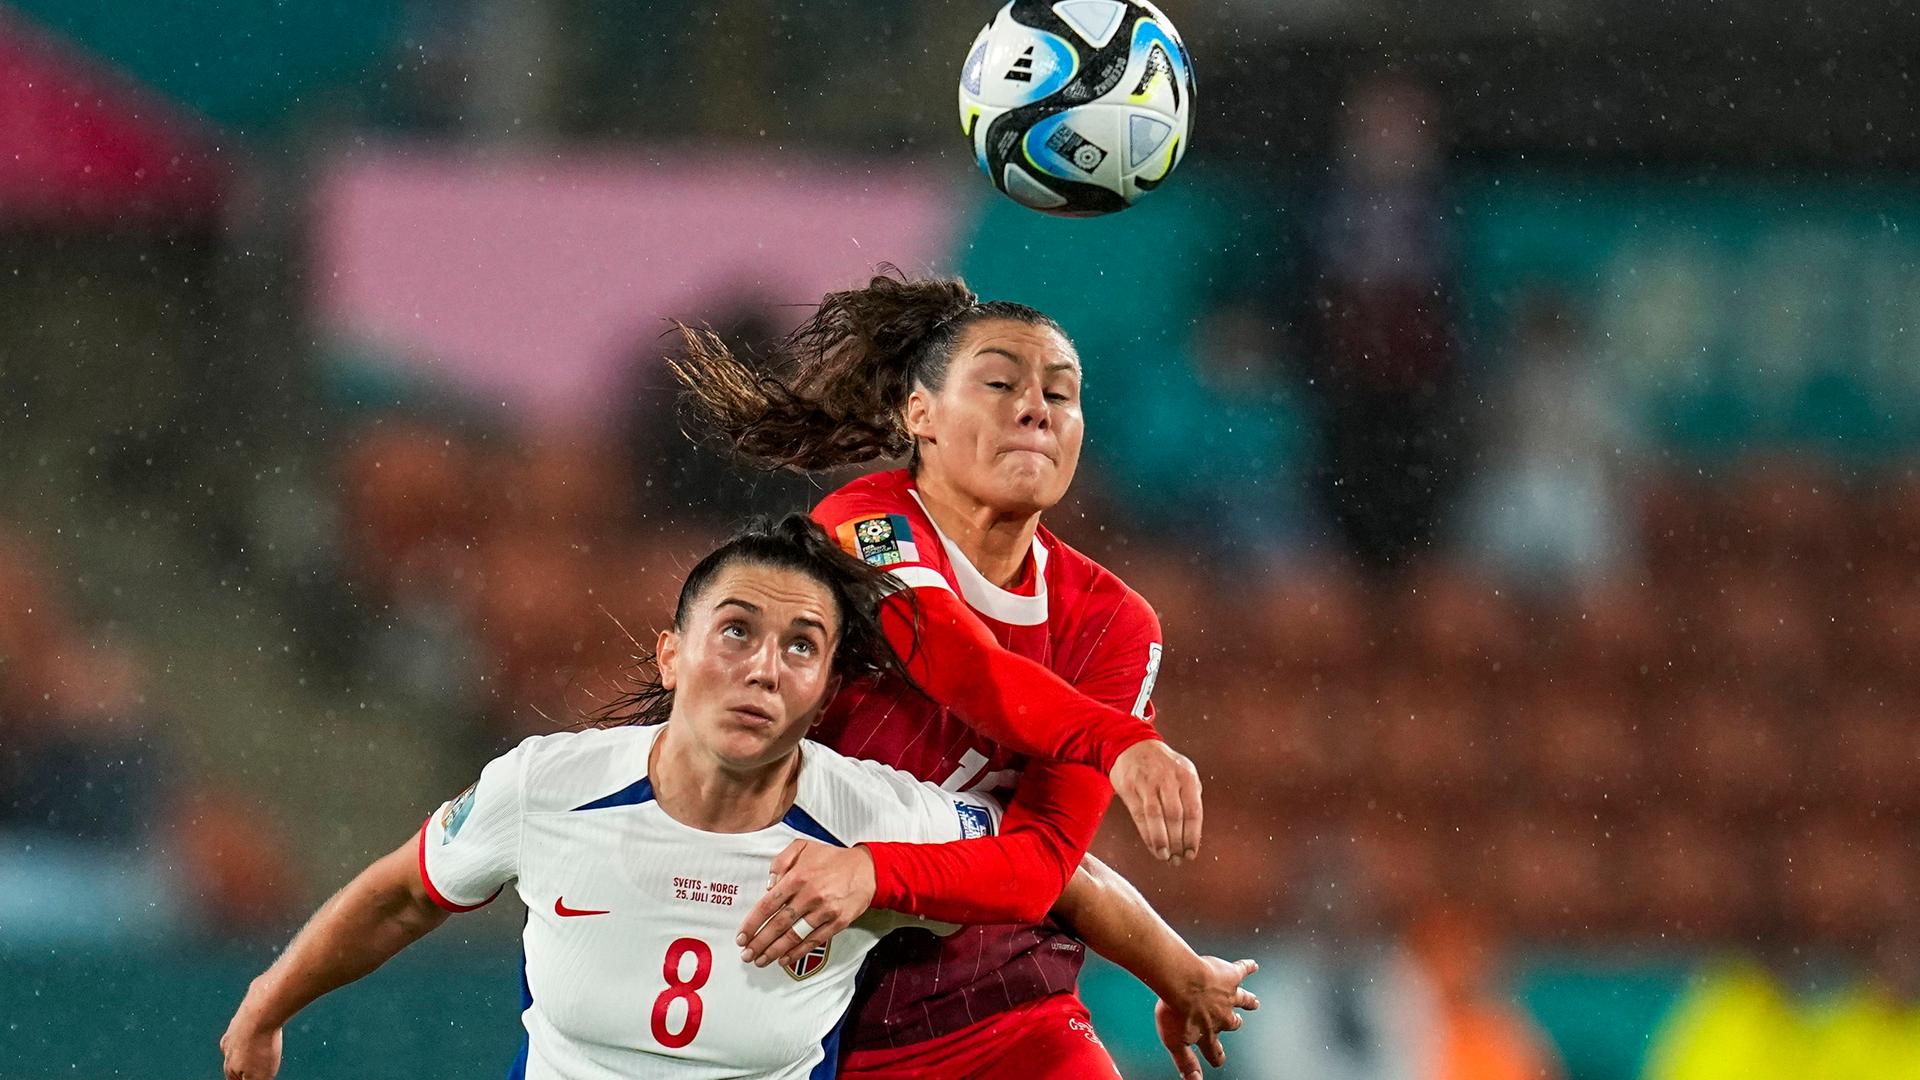 Eine Szene aus dem WM-Spiel Norwegen gegen Schweiz, zwei Spielerinnen kämpfen um den Ball.